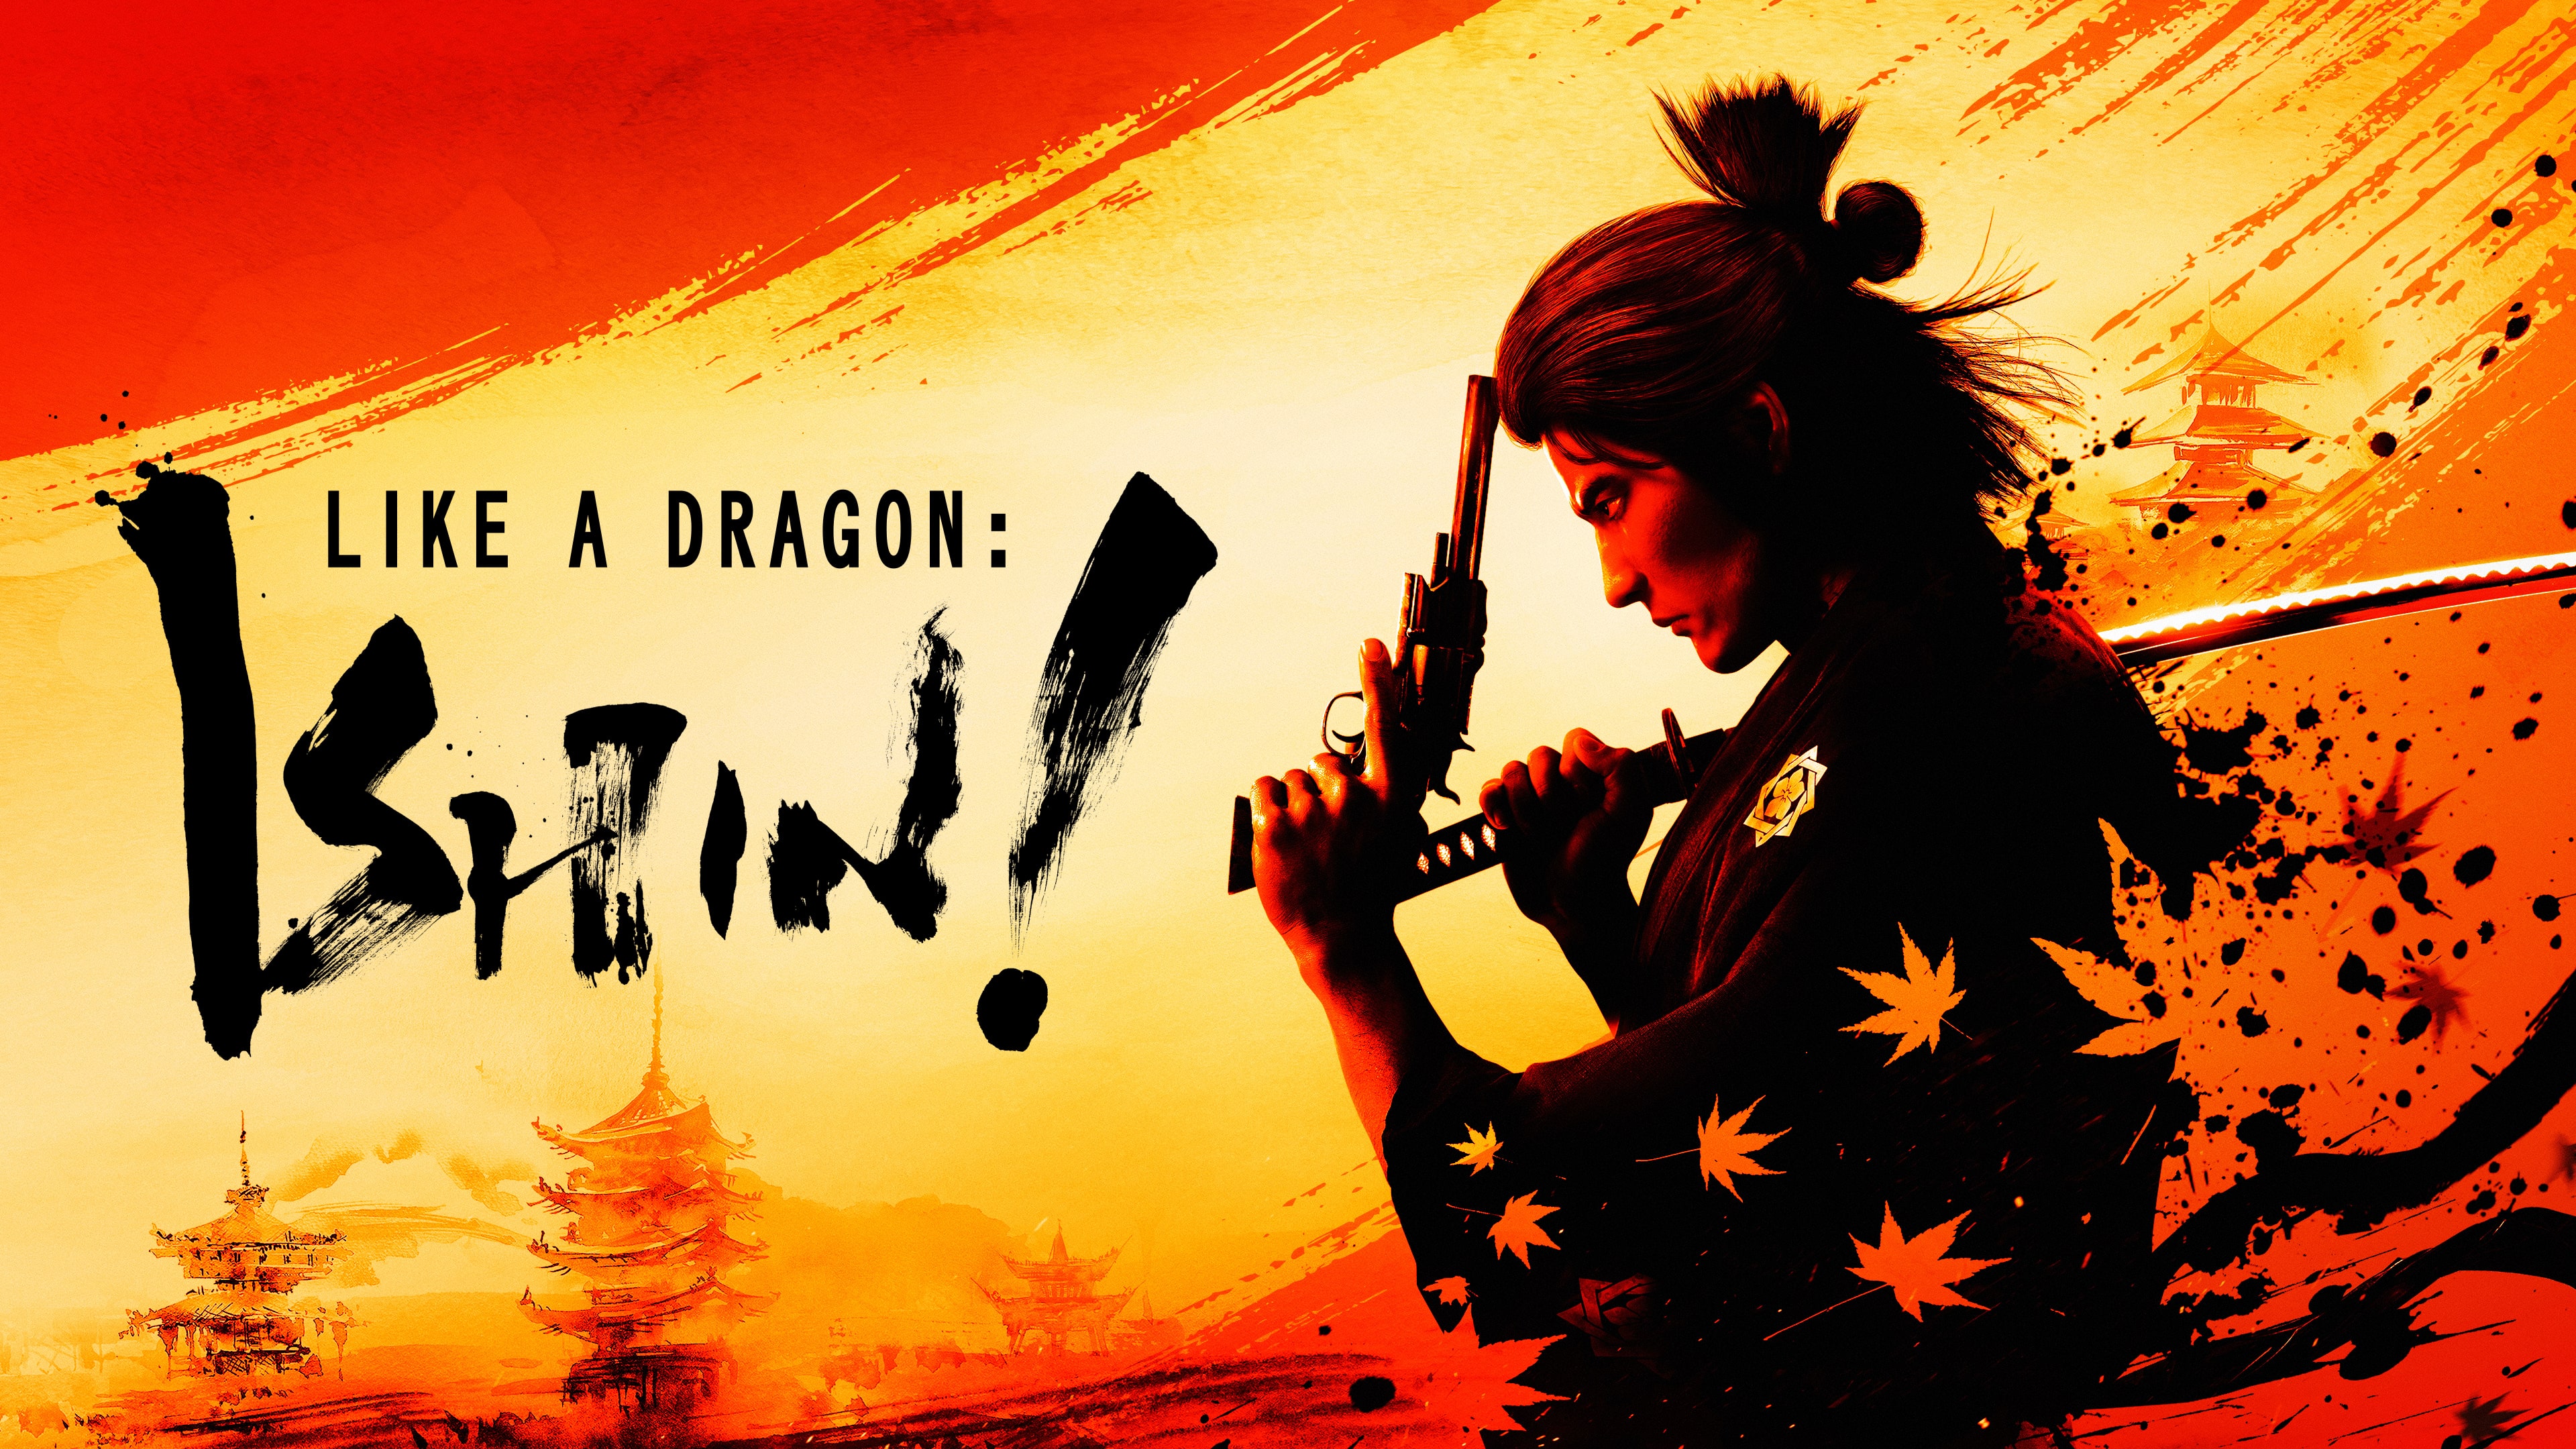 Demo gratuita de Like a Dragon: Ishin! já pode ser aproveitada no